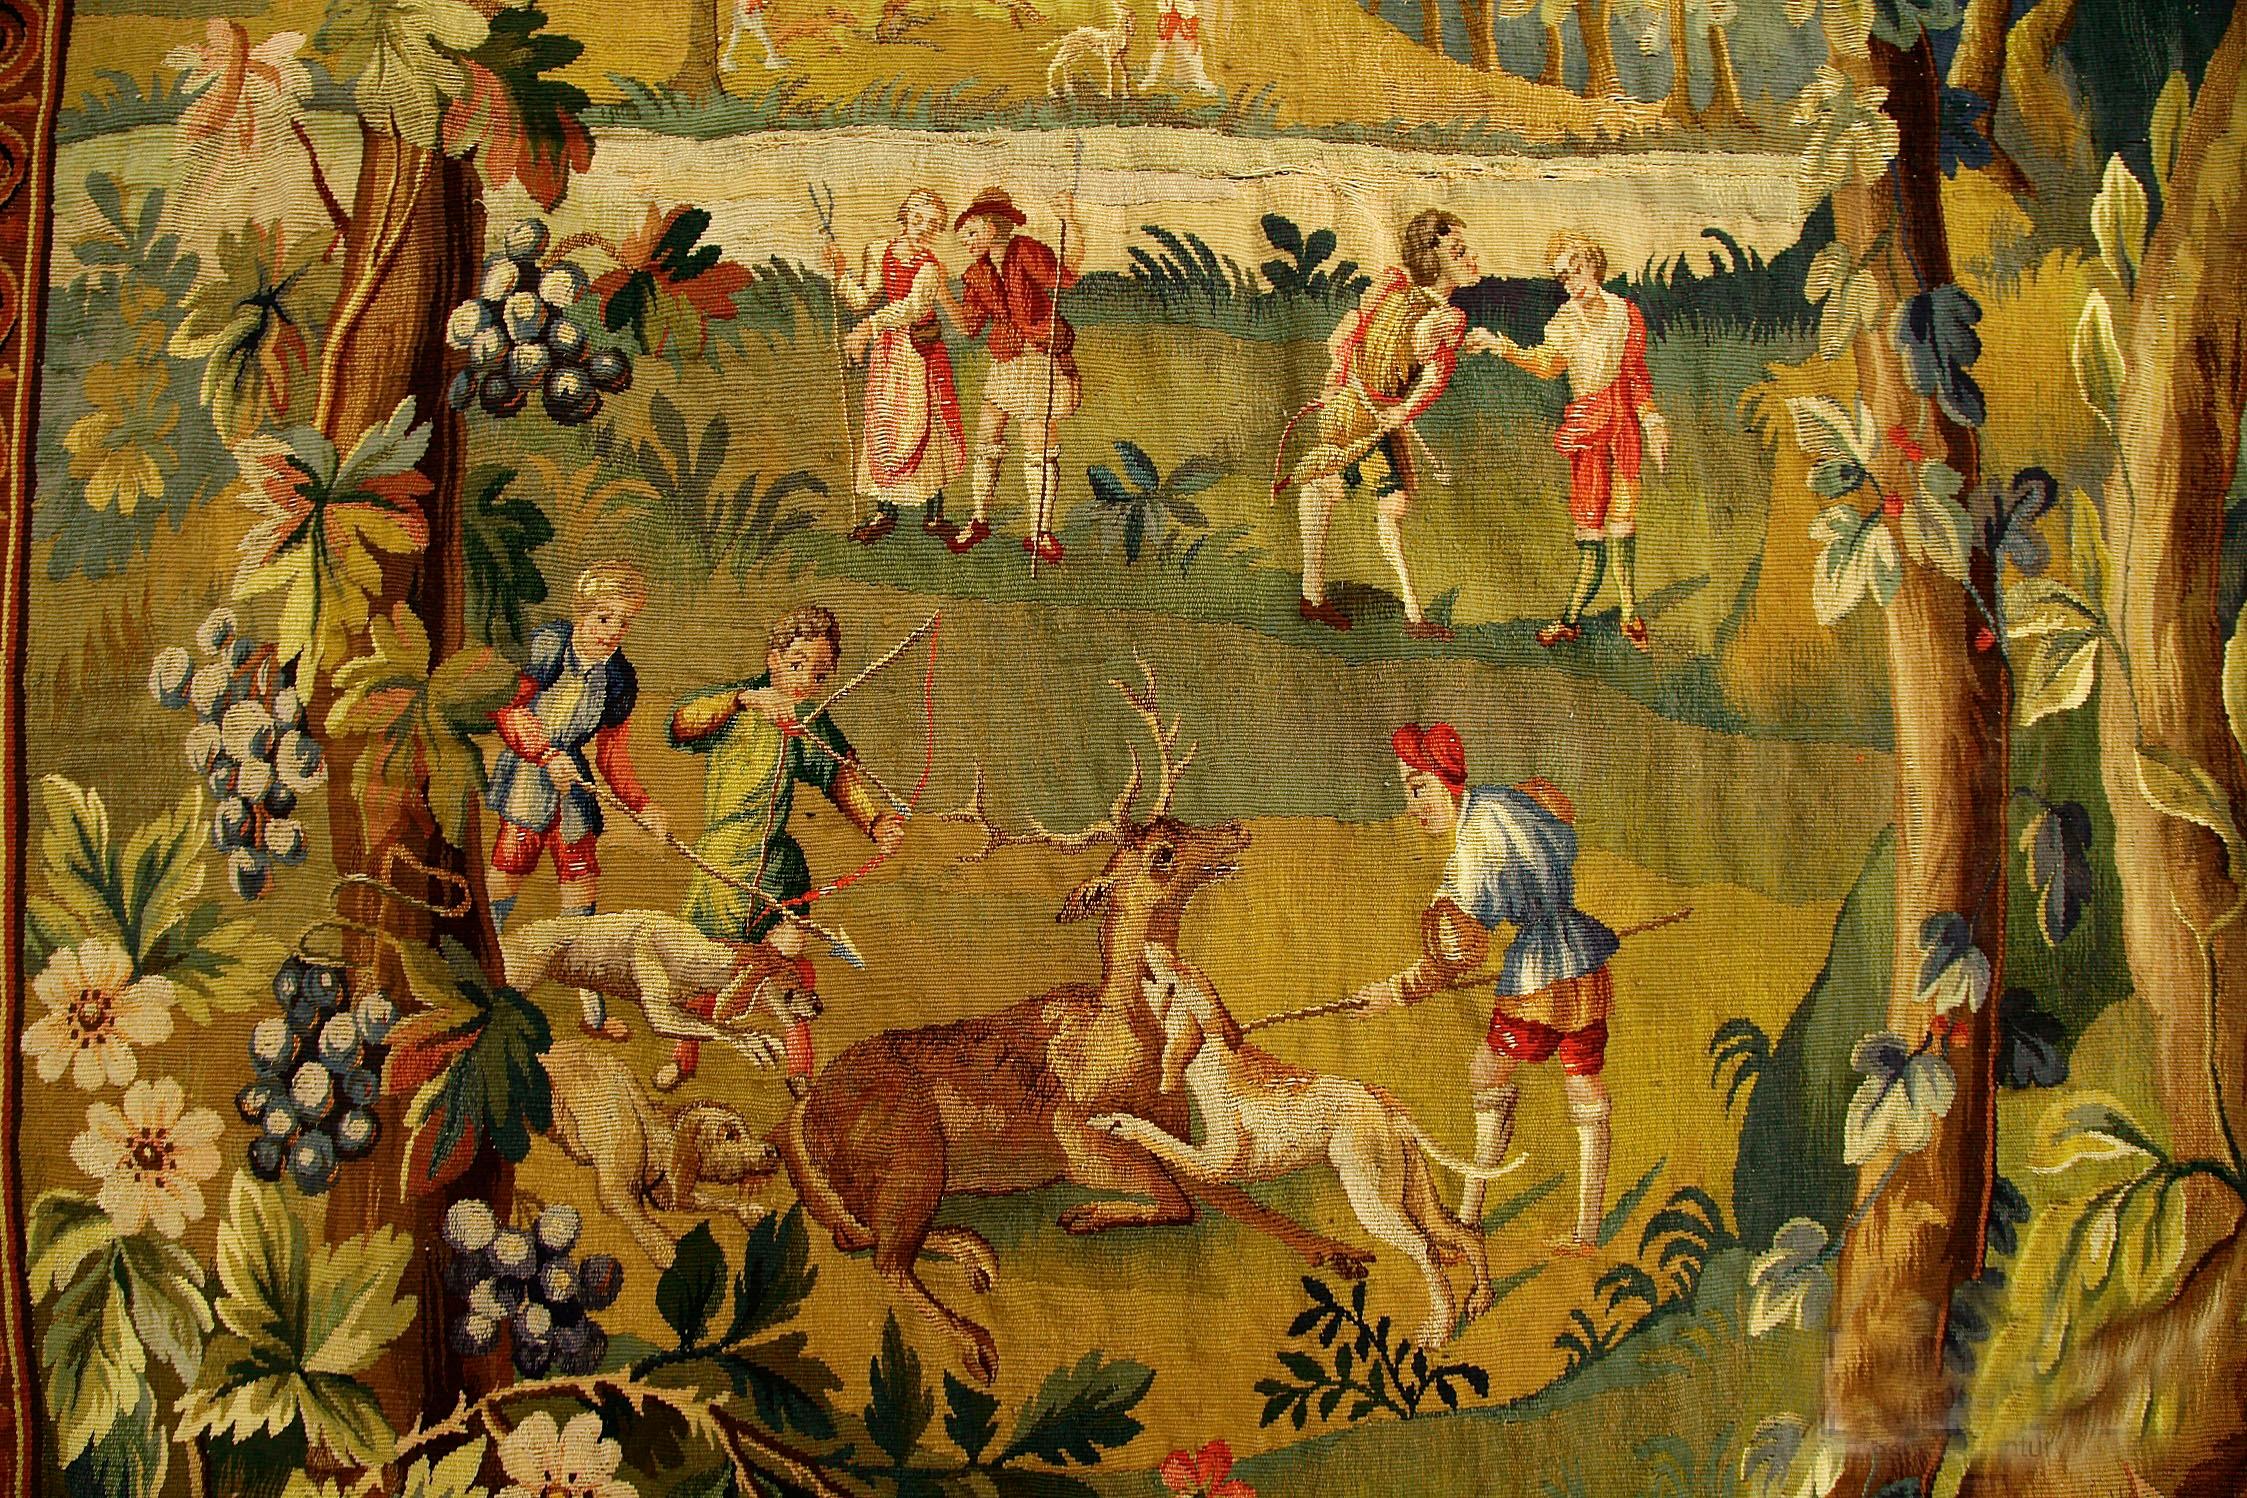 Antiker englischer Soho-Wandteppich, um 1900  6'7 x 6'7 mit der Darstellung einer Jagdszene. Der Wandteppich ist voll von detaillierten Darstellungen von Jägern auf dem Rücken von Pferden, Männern und Frauen, bunten Vögeln und Bäumen, die mit Blumen